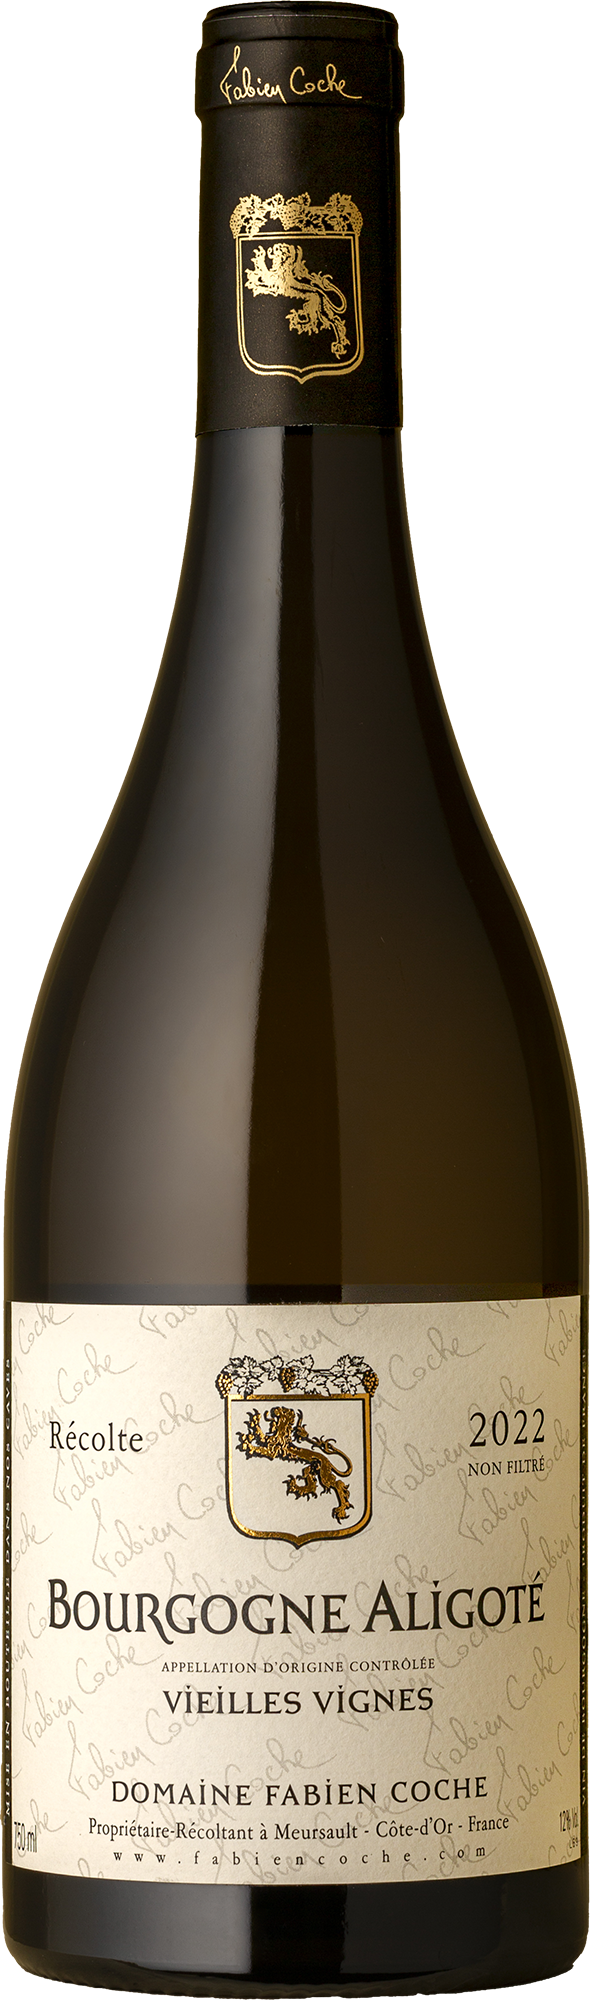 Fabien Coche - Bourgogne Aligote 2022 White Wine